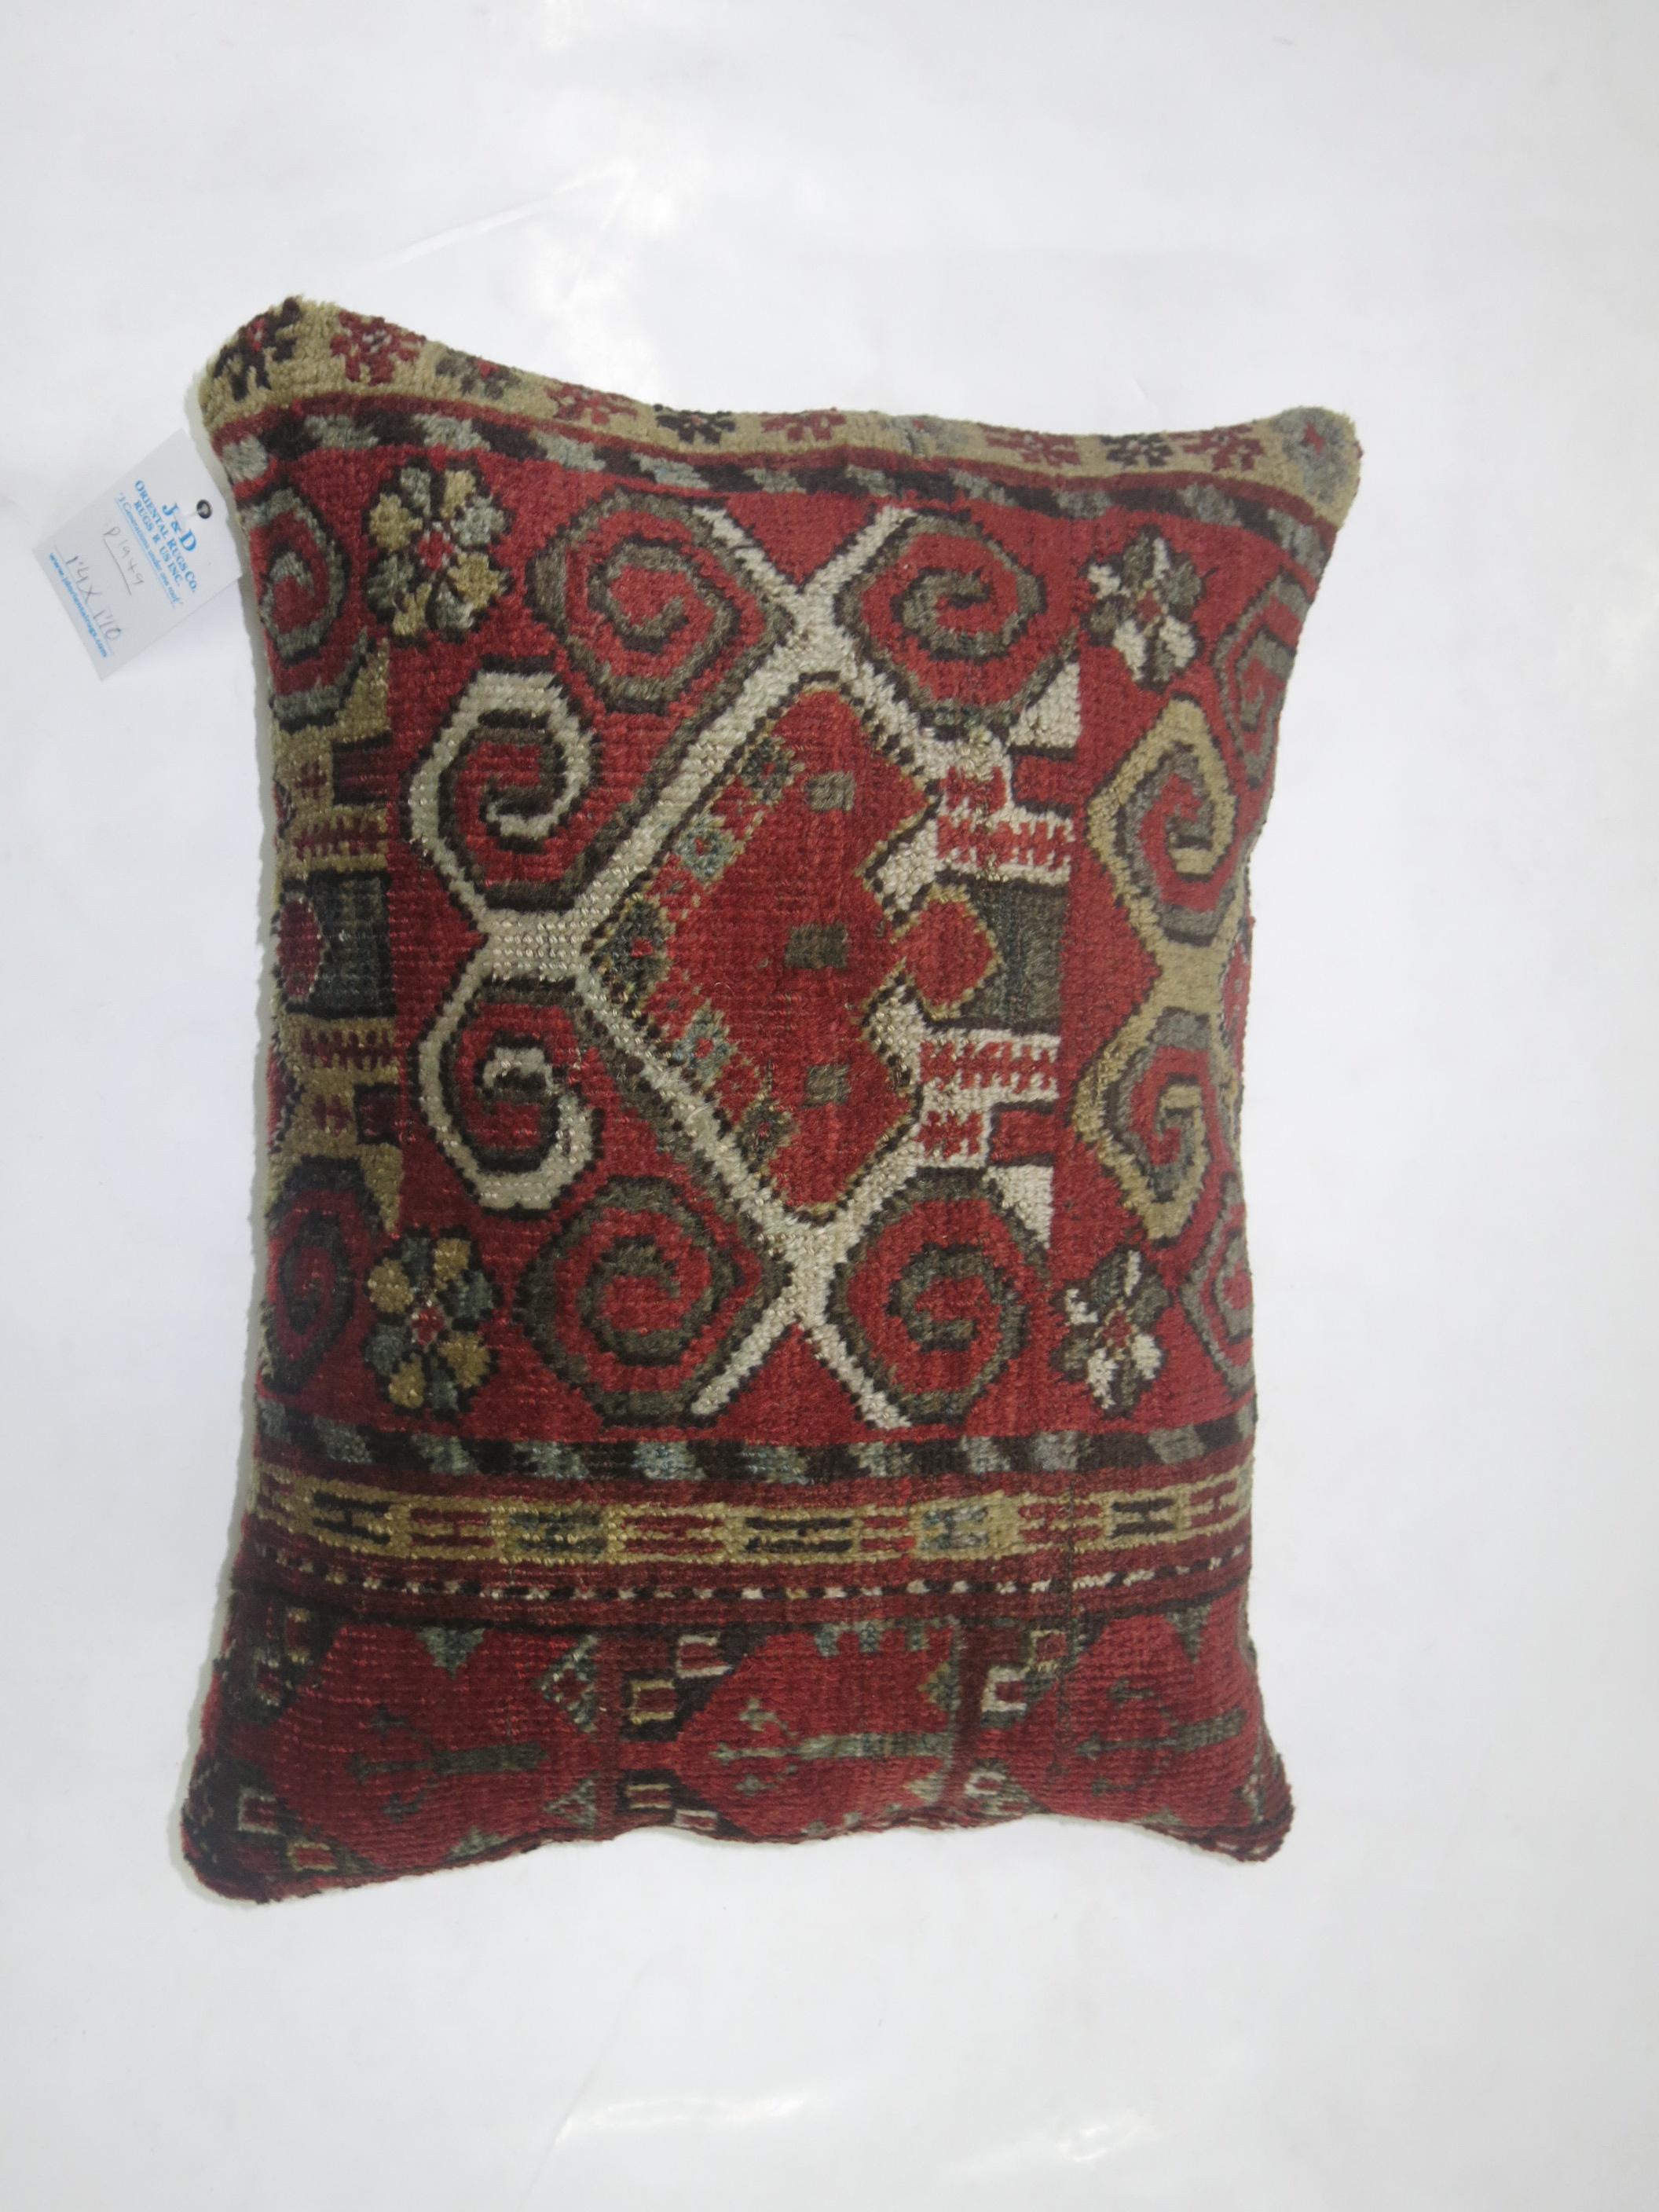 Kazak Tribal Ersari Lumbar Rug Pillow